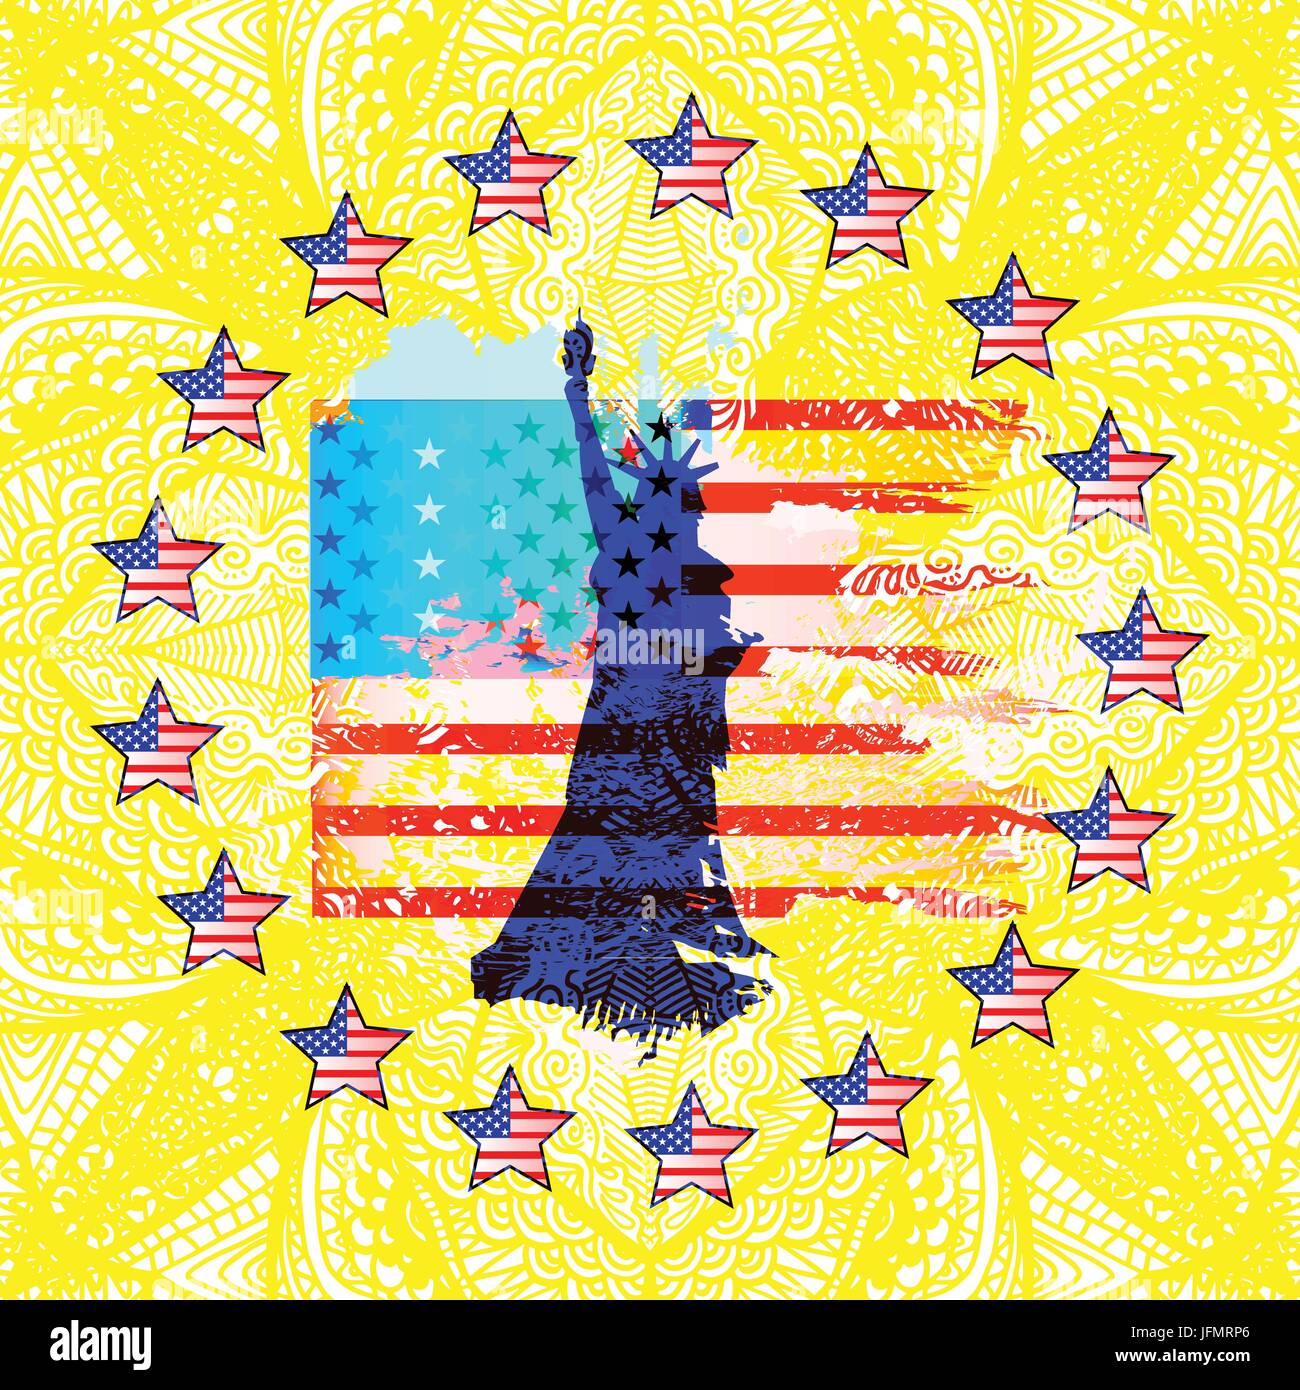 Cờ của Hoa Kỳ là biểu tượng của sự tự do, bình đẳng và quyền lợi của công dân. Xem hình ảnh về cờ Mỹ để khám phá thêm những giá trị văn hóa và lịch sử của quốc gia đại diện cho sự tiến bộ và đa dạng.